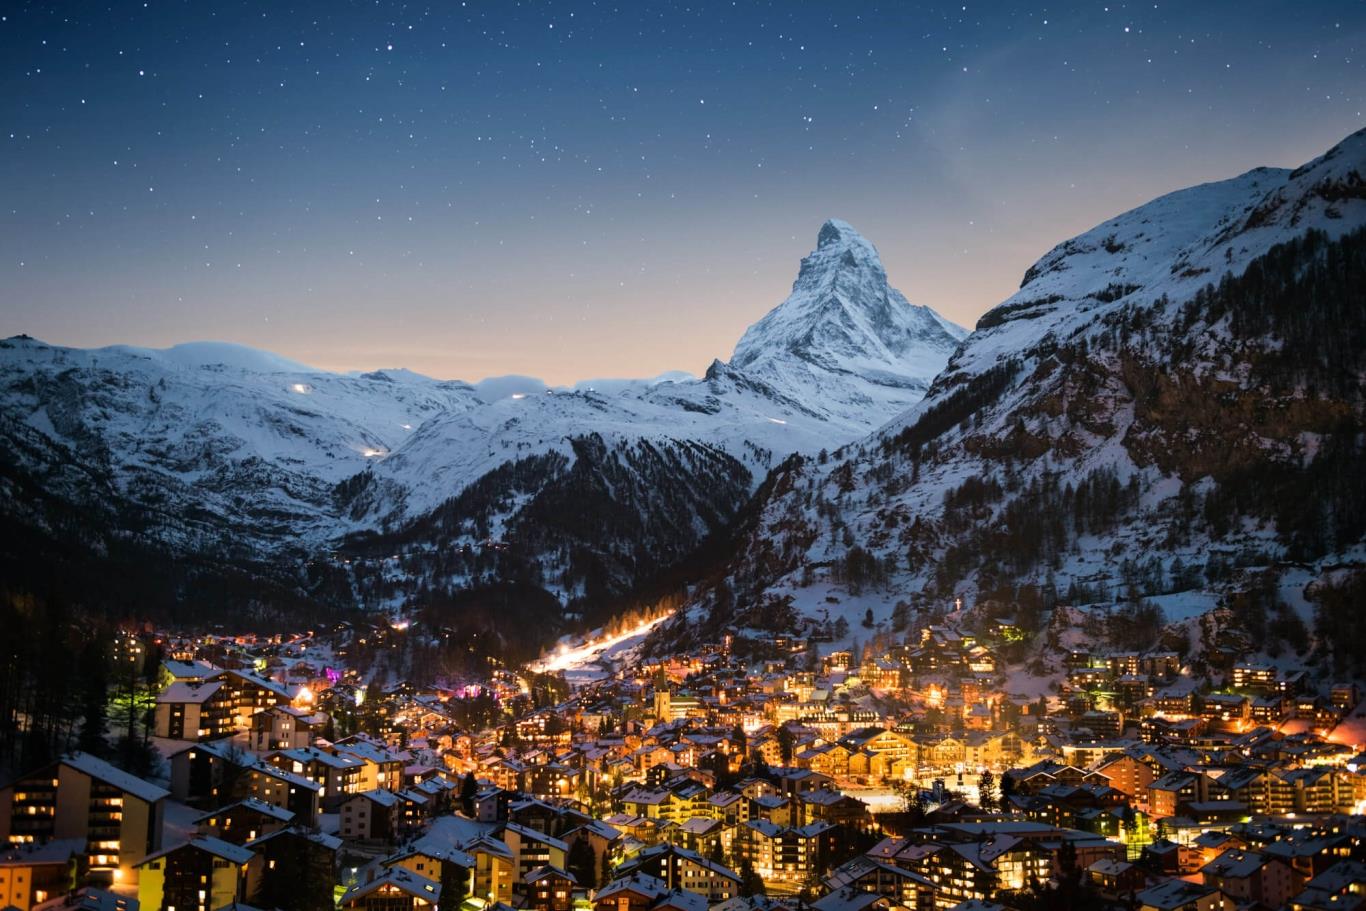 Thụy Sĩ, lãng mạn cảnh sắc mùa đông tựa tranh vẽ | VIETRAVEL - Vietravel